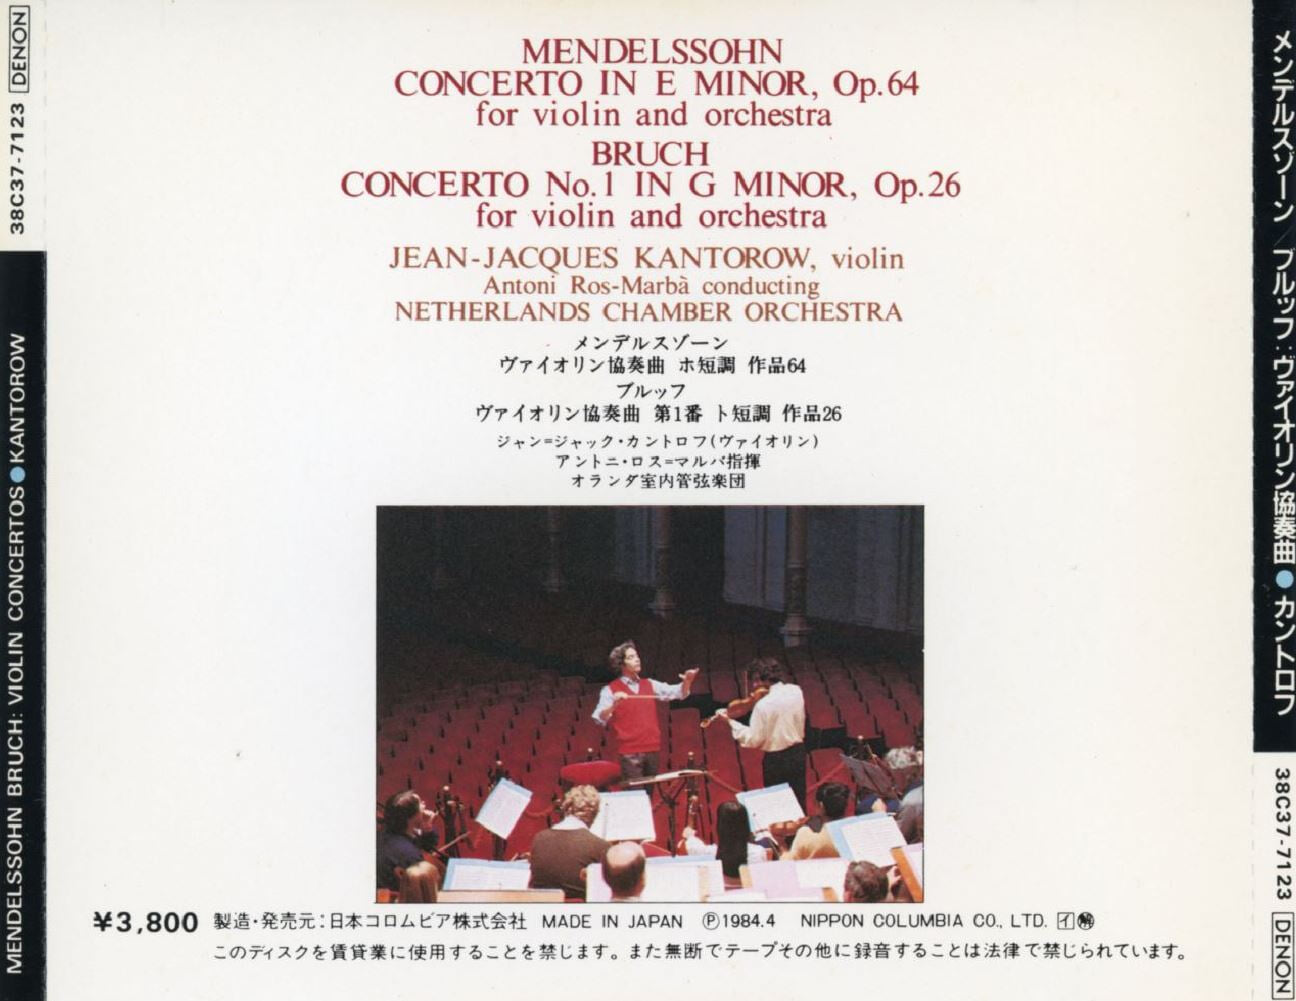 장 장크 칸토로우 - Jean-Jacques Kantorow - Mendelssohn,Bruch Violin Concerto [일본발매]